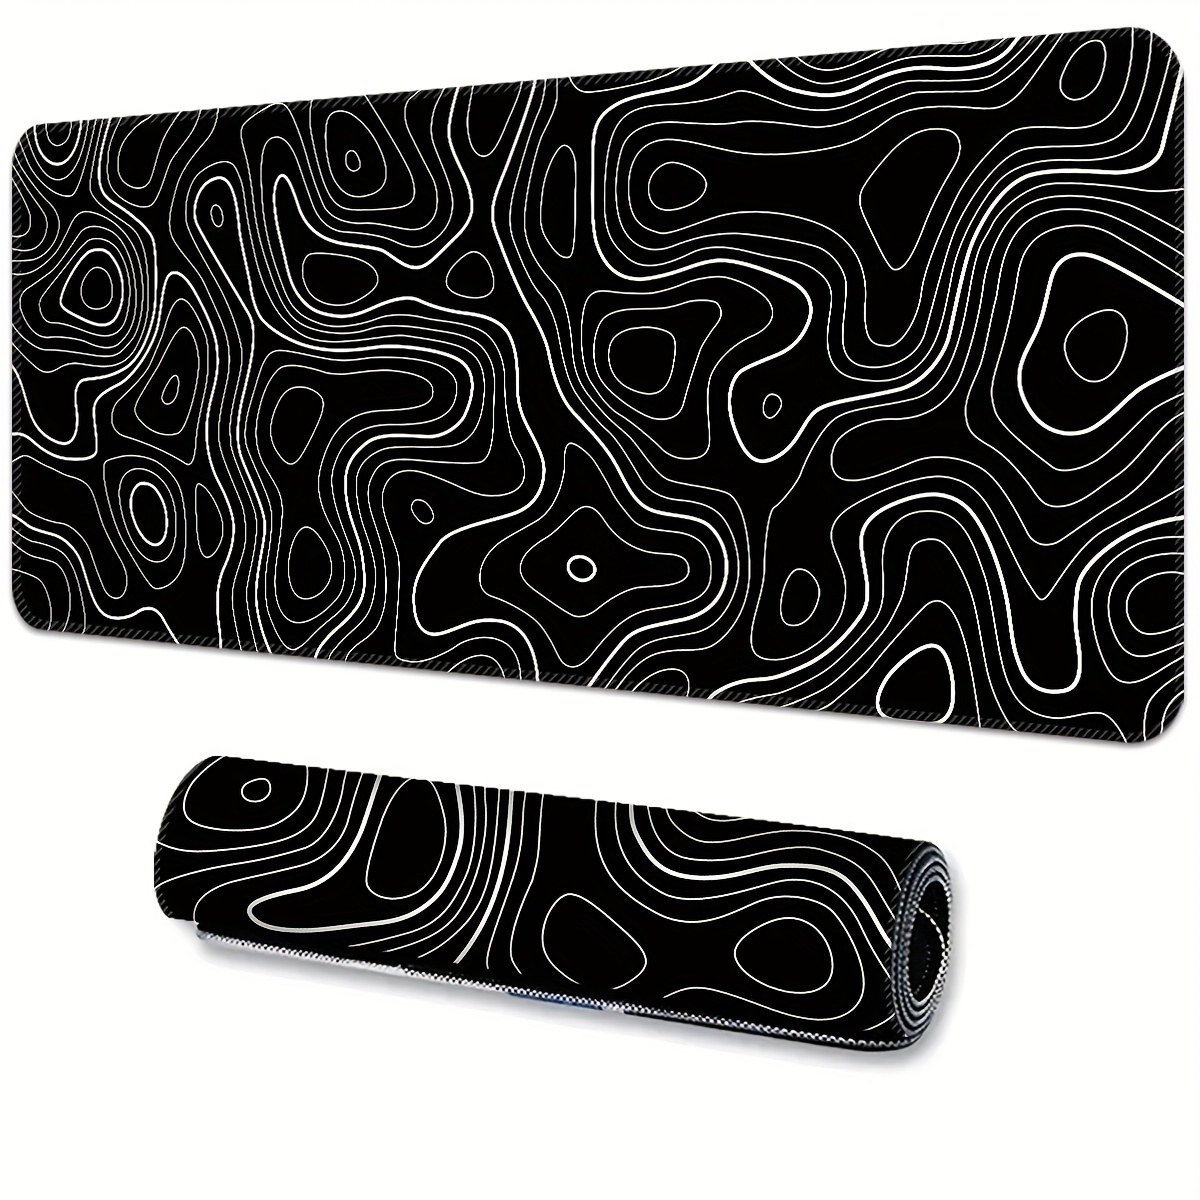 Grand Wave - tapis de souris Xxl noir et blanc pour ordinateur